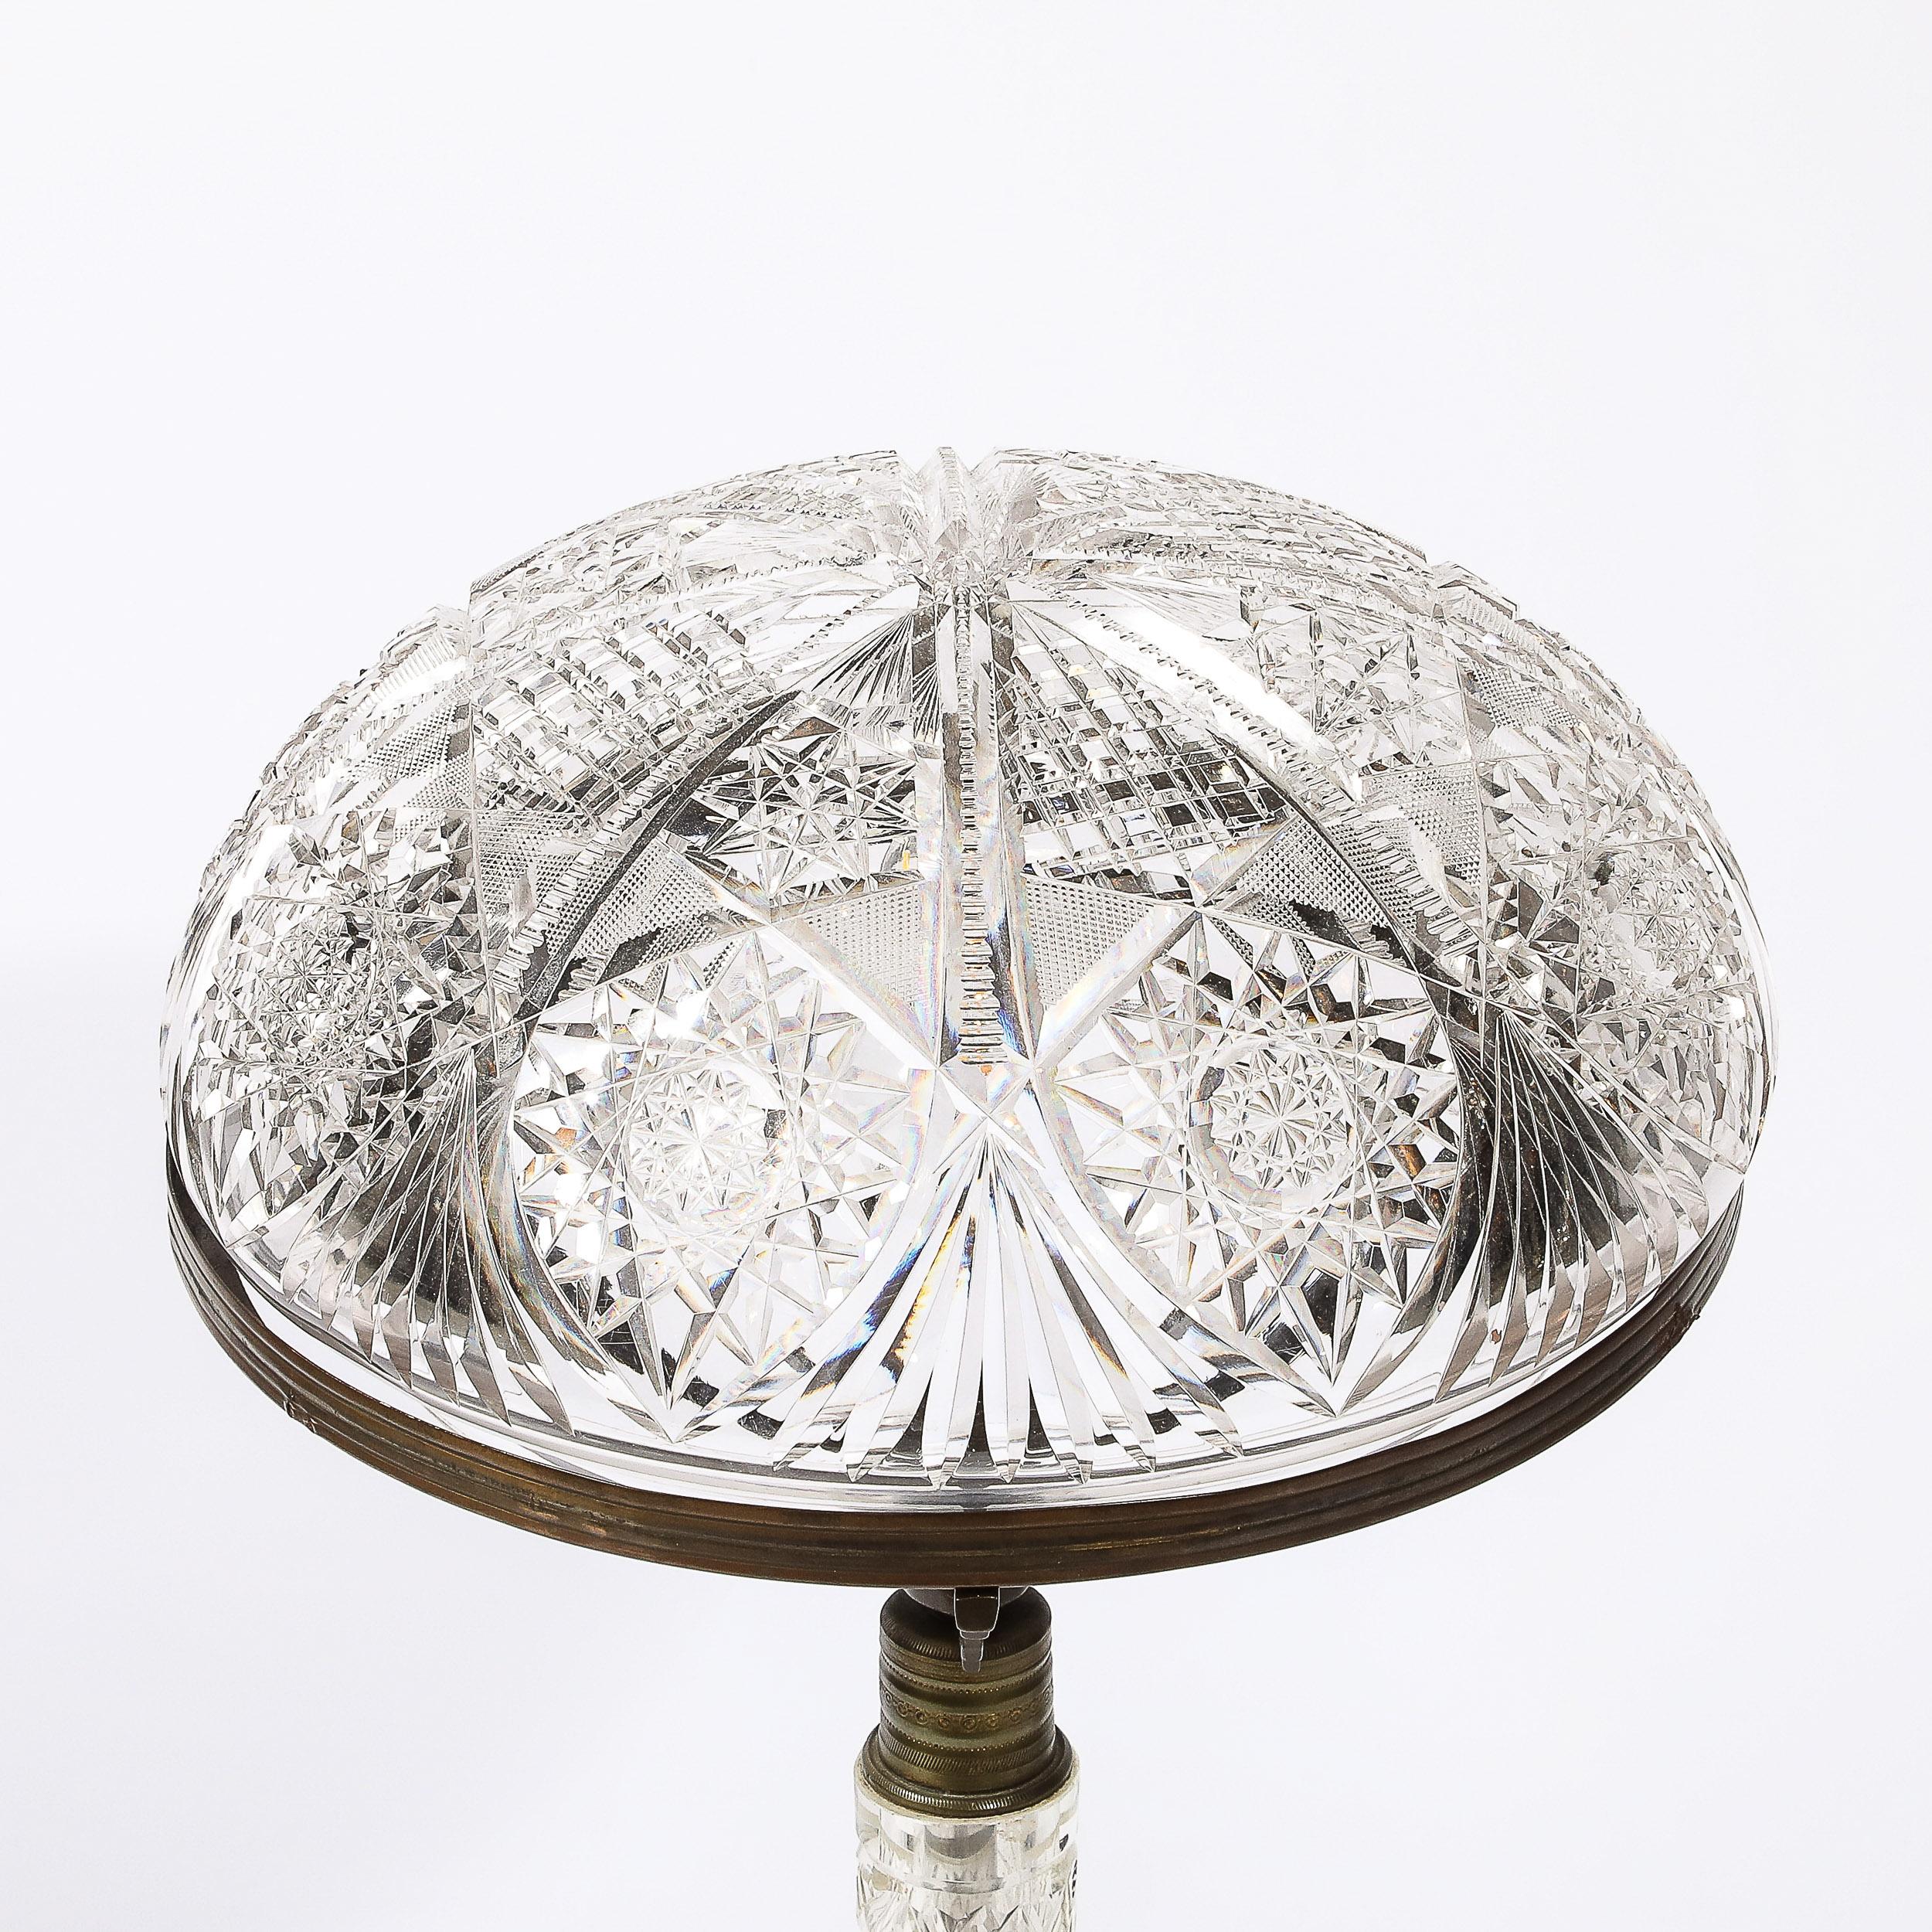 Diese glänzende Art Deco Tischlampe aus geschliffenem Kristall und Bronze stammt aus den Vereinigten Staaten, CIRCA 1925. Der kuppelförmige, geschliffene Kristallschirm mit stilisierten geometrischen Motiven und eleganten Details wird von drei